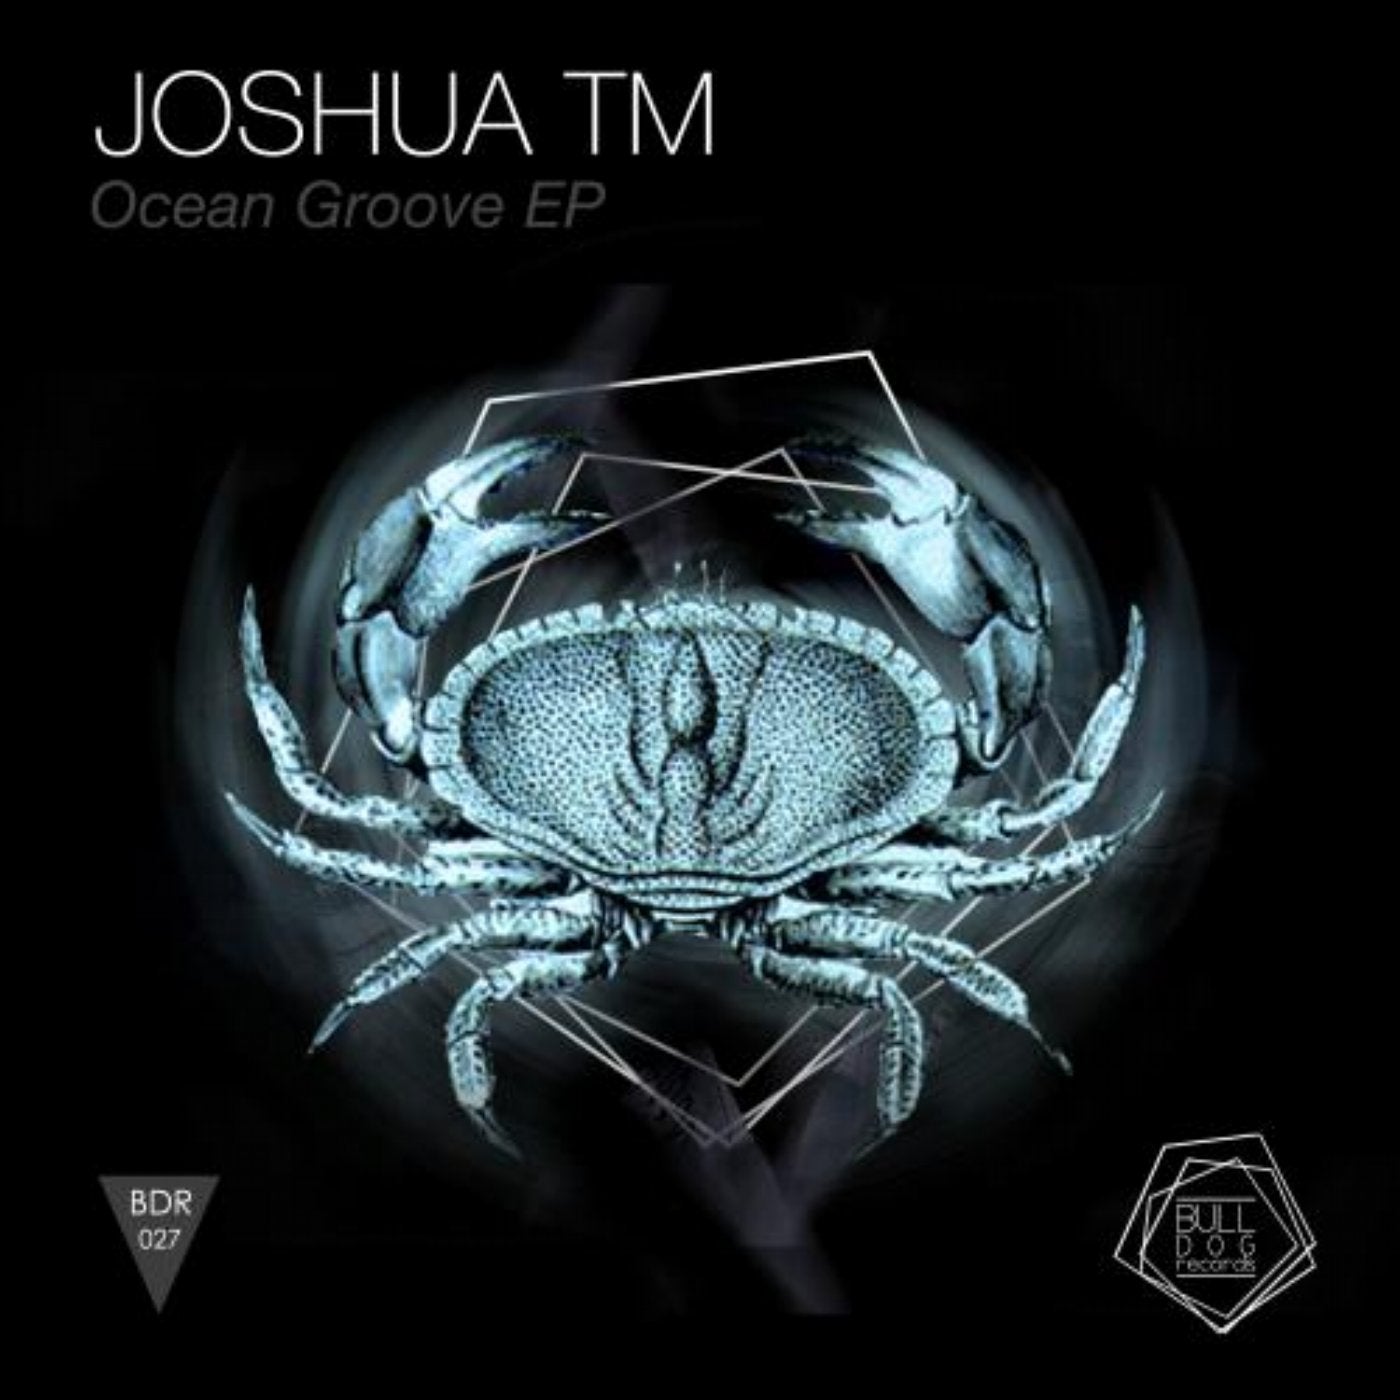 Ocean Groove EP